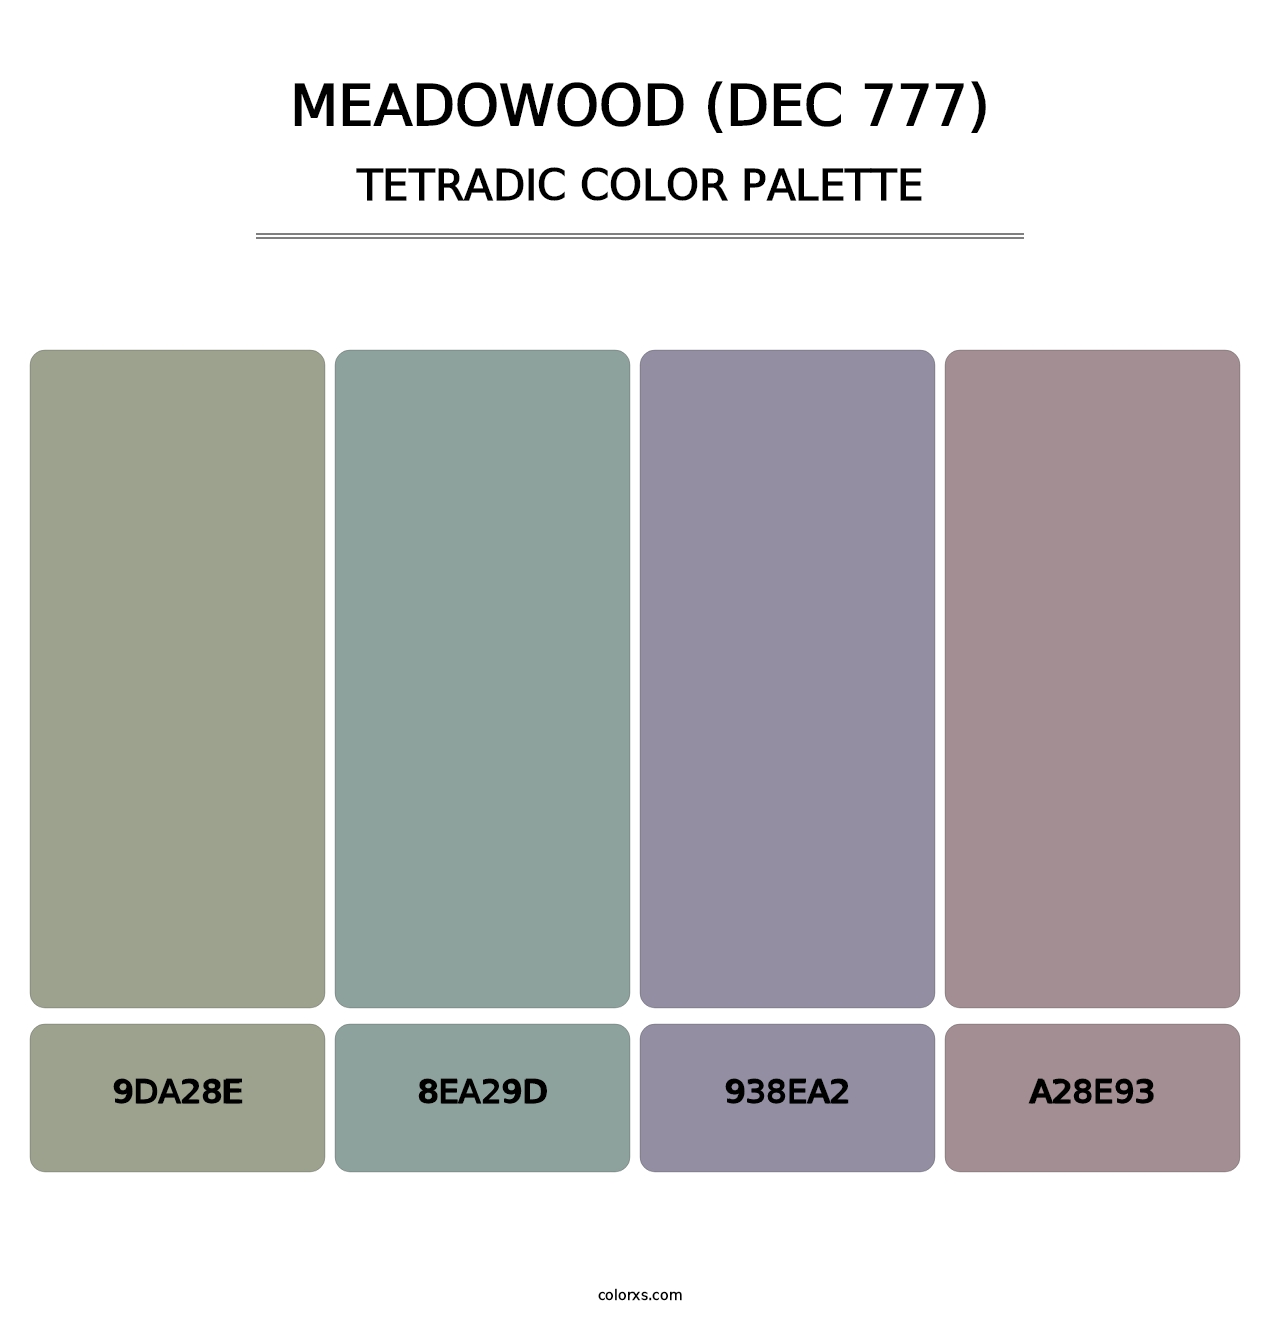 Meadowood (DEC 777) - Tetradic Color Palette